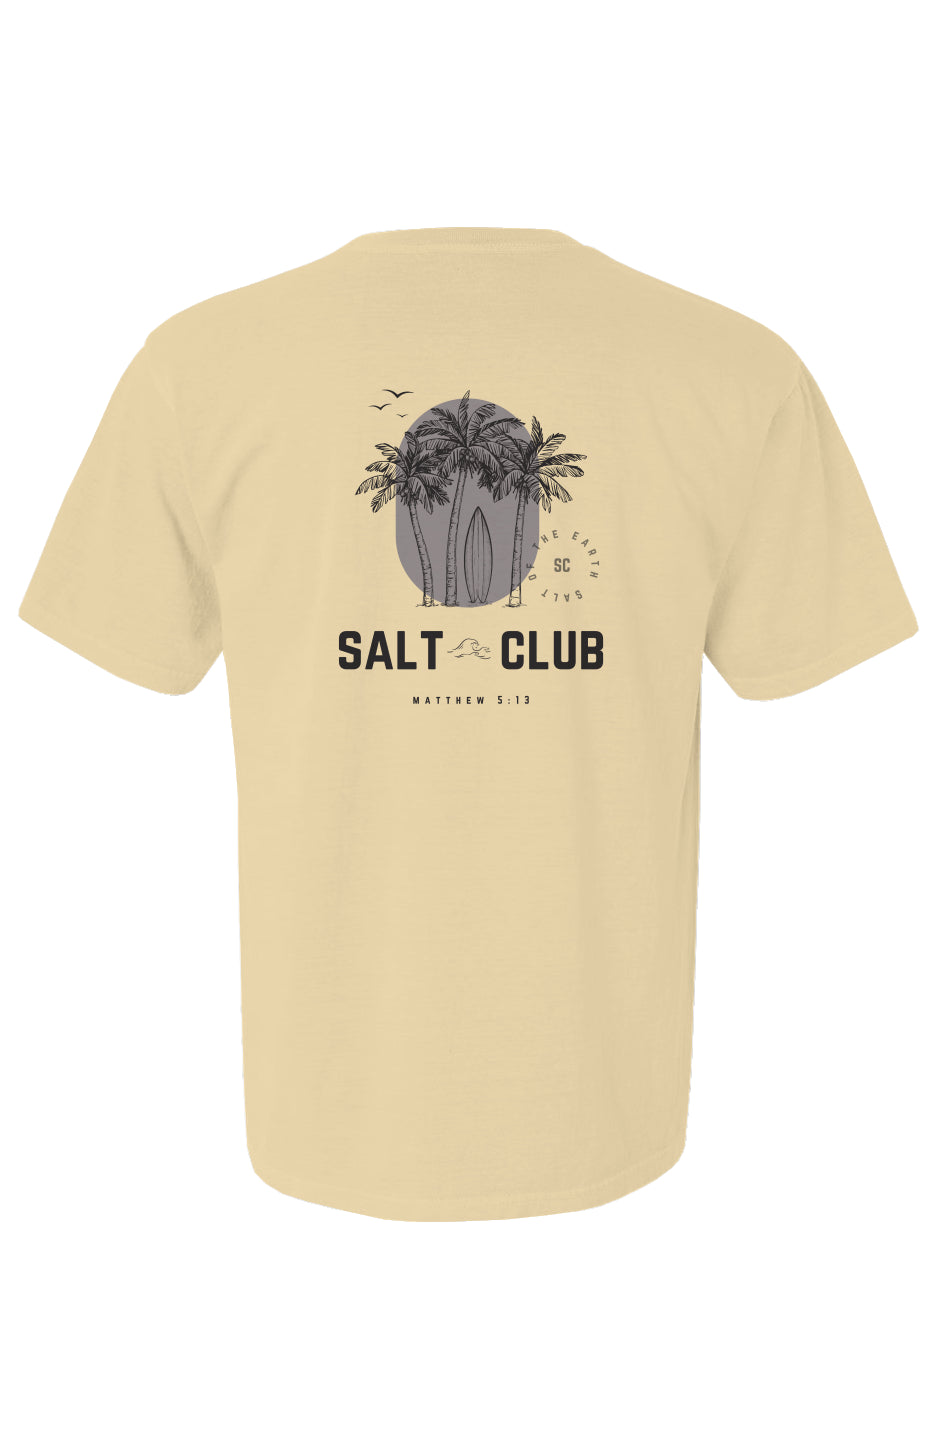 Salt Club yllw